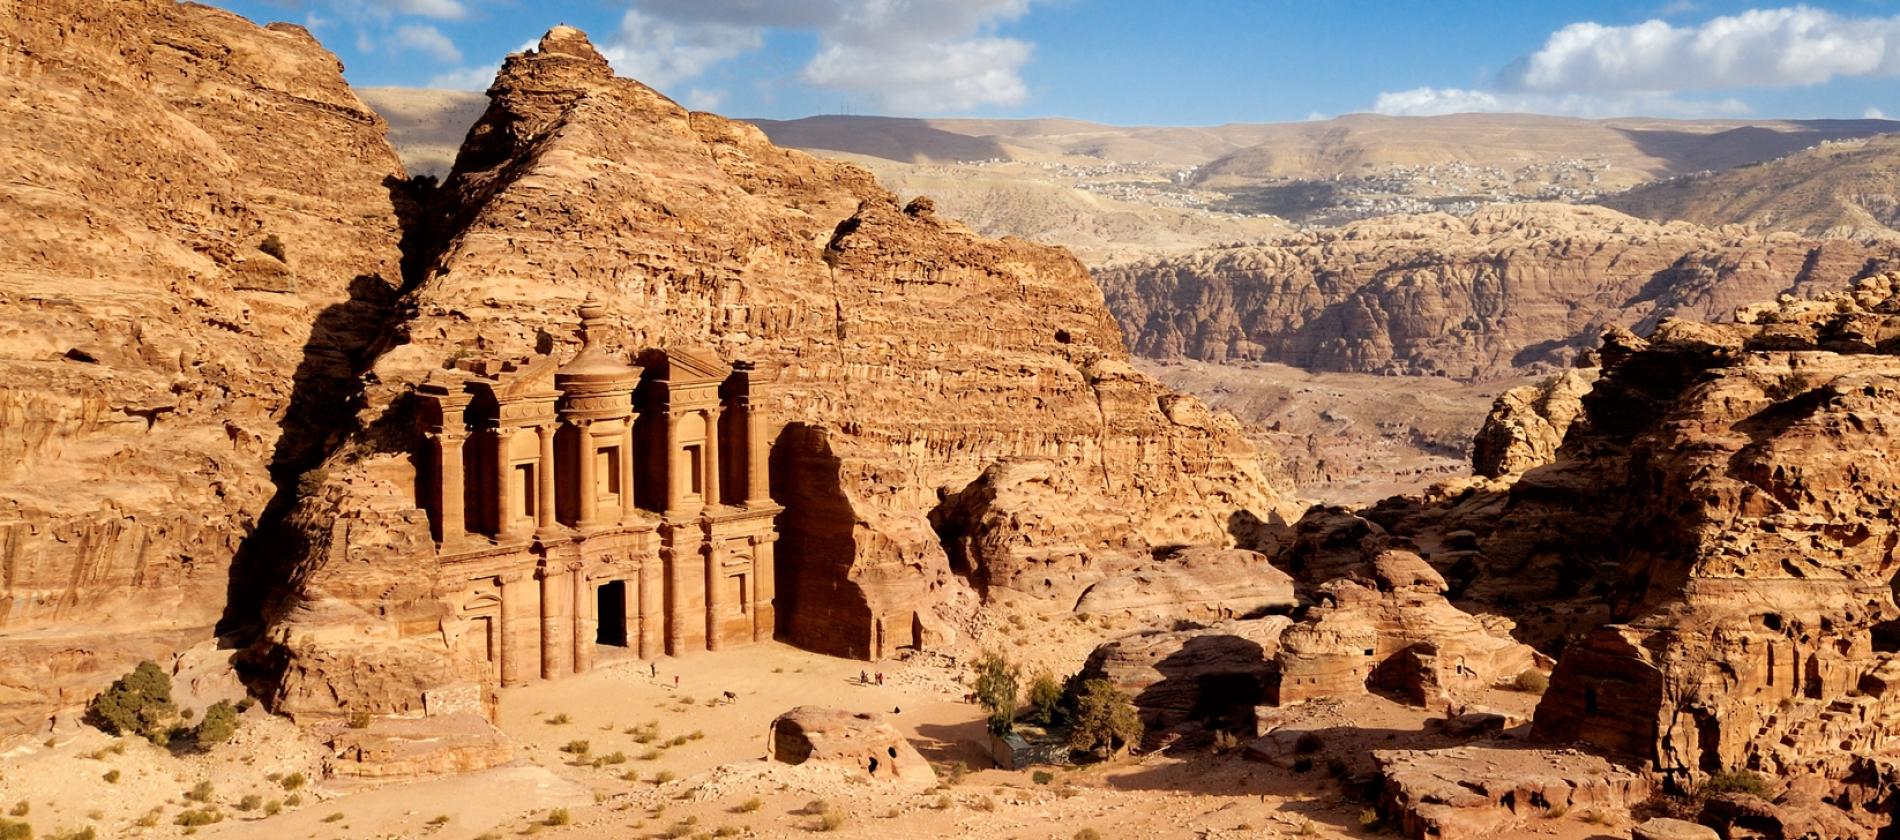 WORLDKINGS] Những địa điểm độc đáo trên thế giới (P.8) - Petra Nabataean  (Jordan): Thành phố cổ được xây dựng trong lòng núi đá của người cổ đại. -  HỘI KỶ LỤC